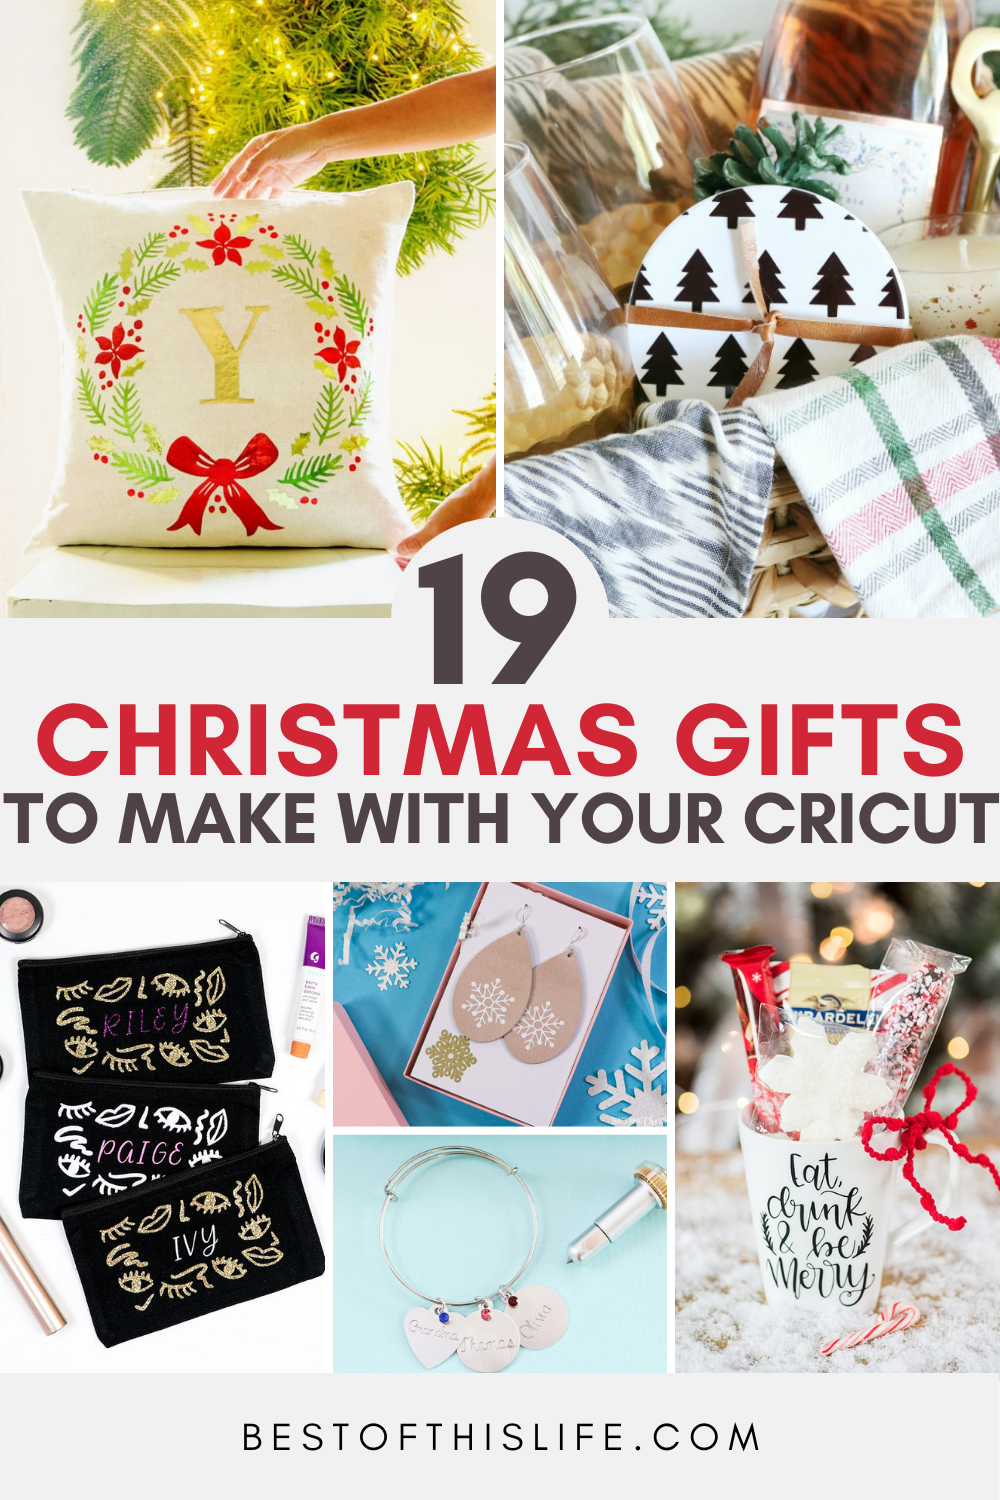 50 homemade gift ideas to make for under $5 | Homemade christmas gifts, Homemade  gifts, Diy christmas gifts